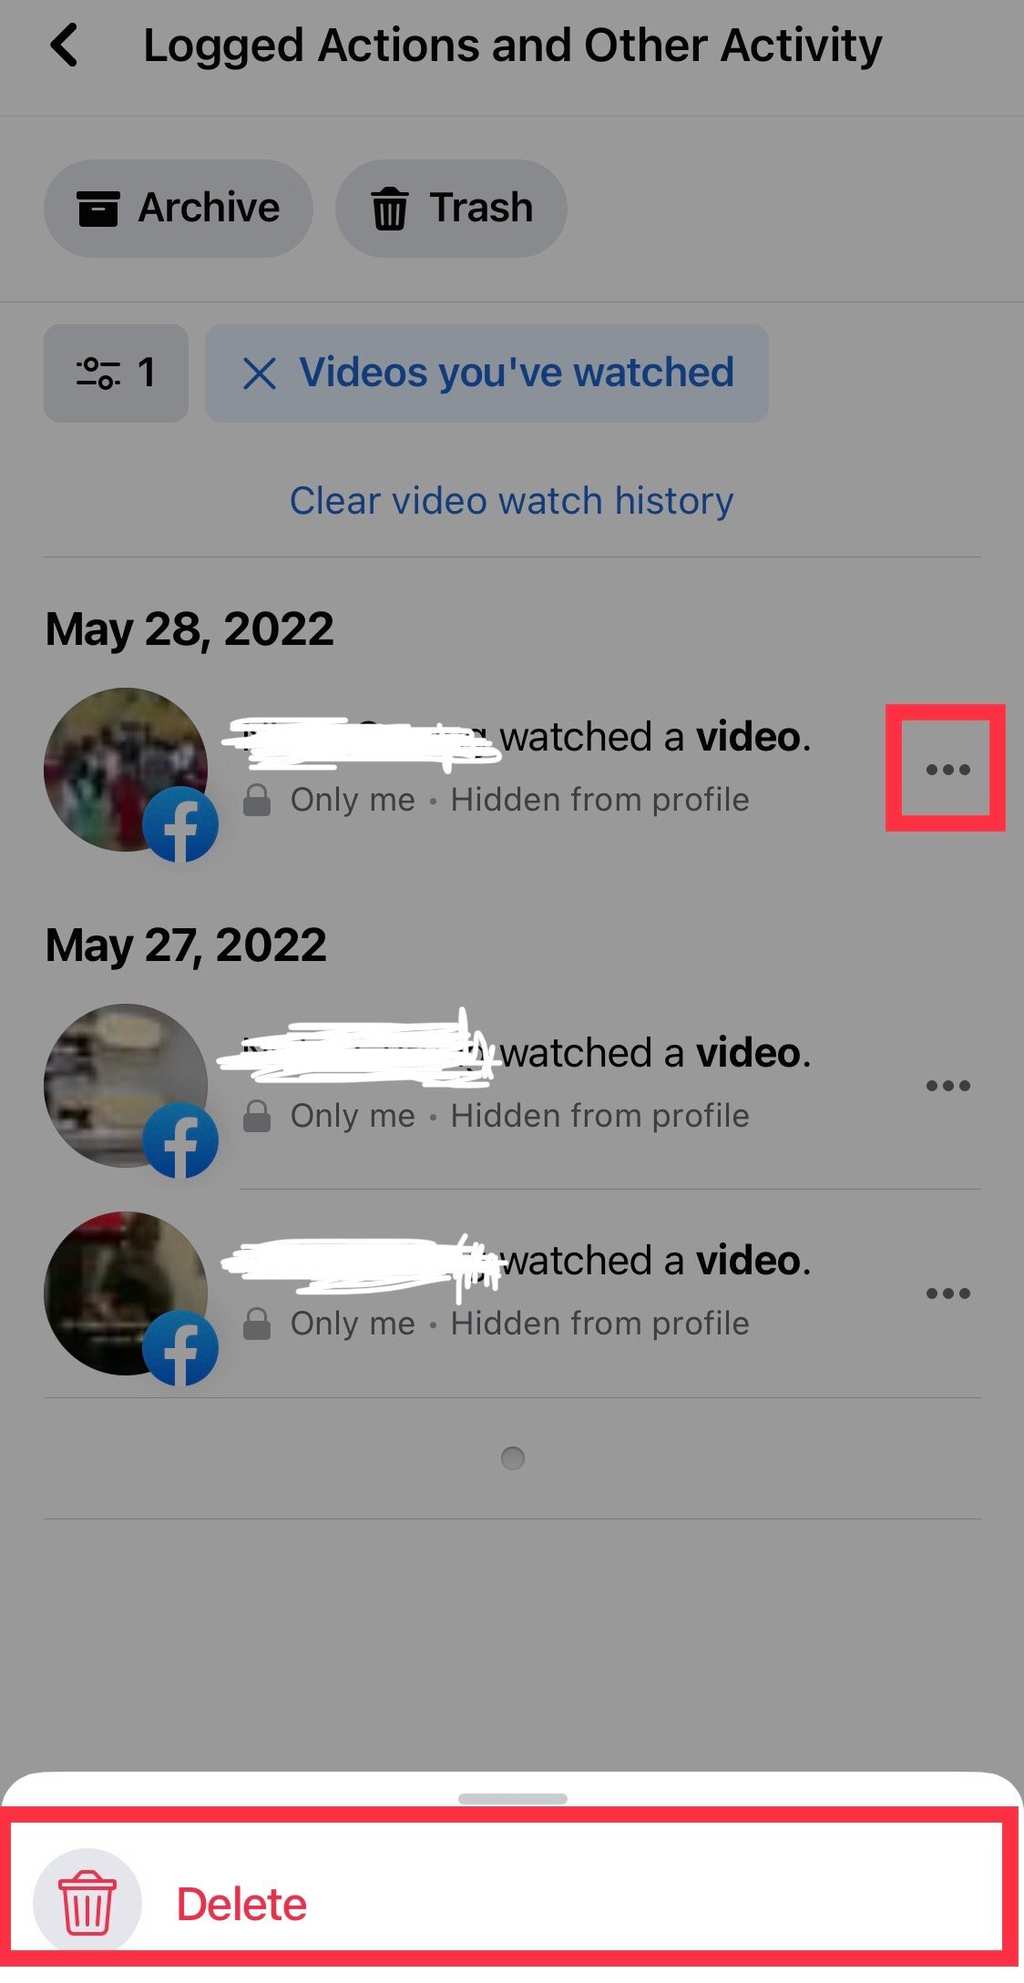 ¿Cómo eliminar videos vistos en Facebook? - 13 - octubre 20, 2022